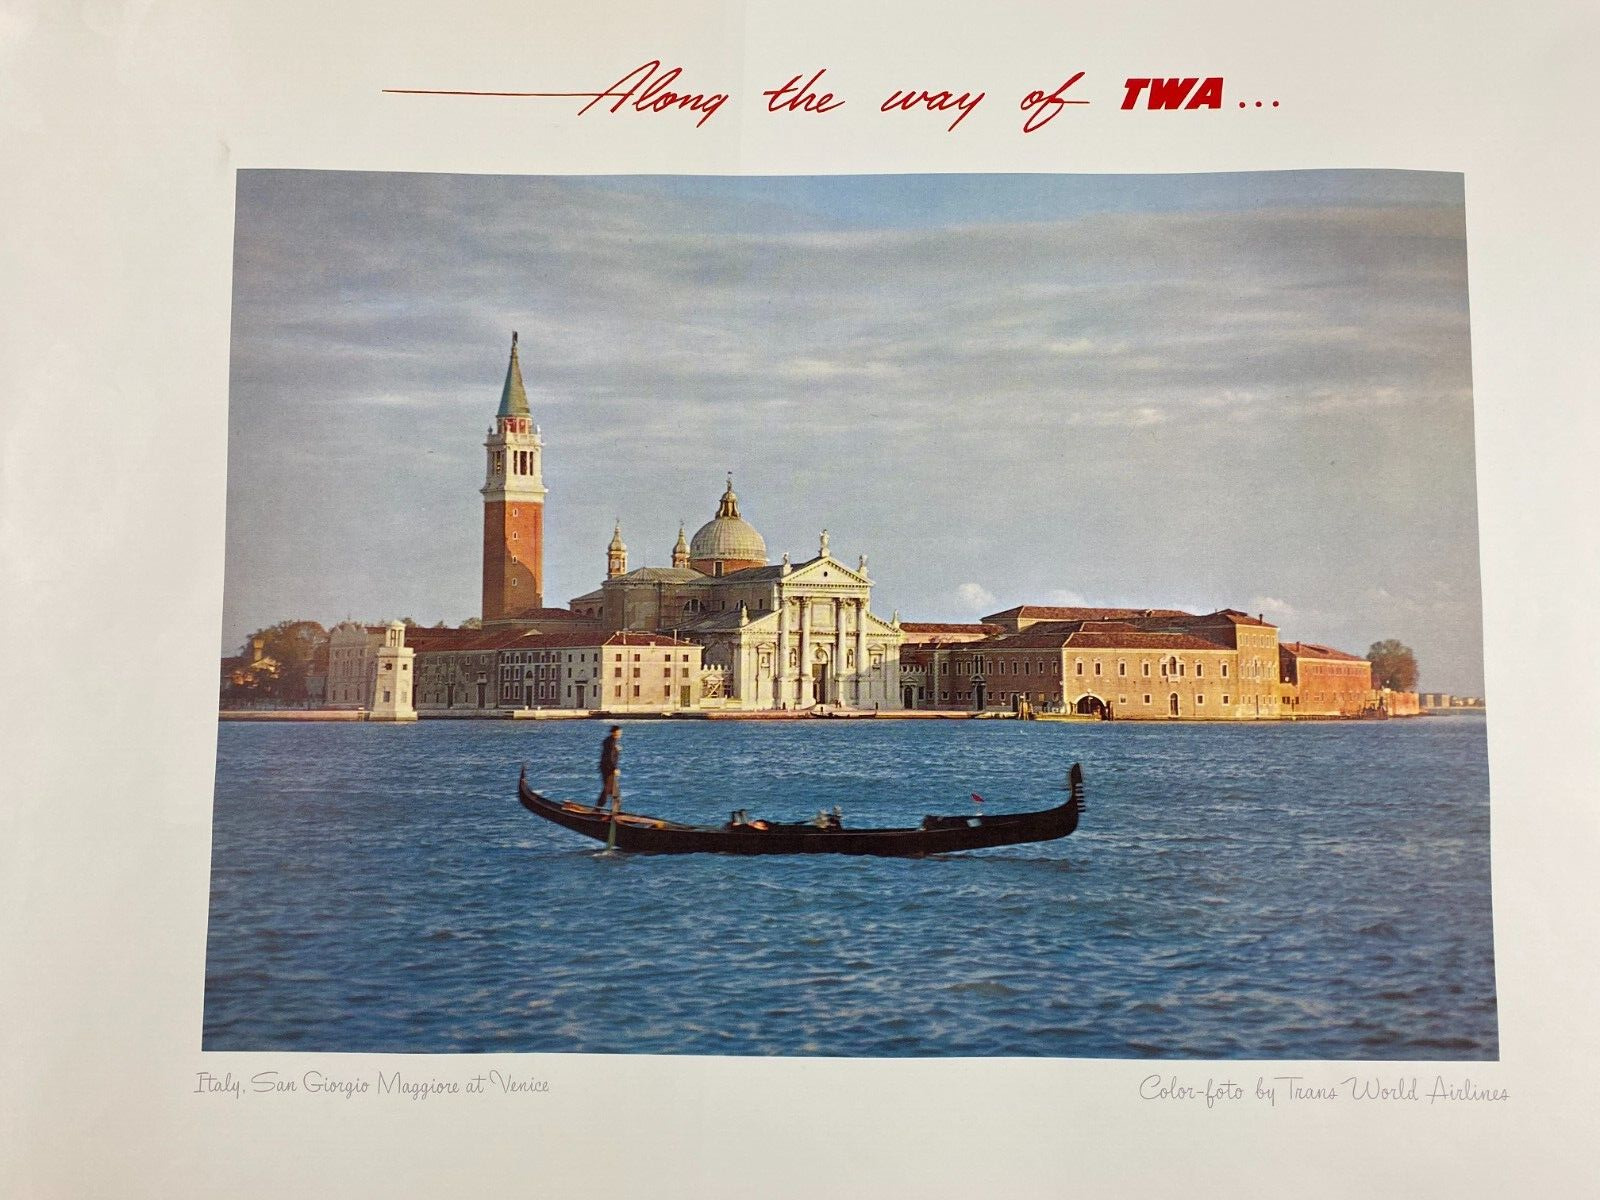 Along the Way of TWA Poster San Giorgio Maggiore at Venice Italy 22\